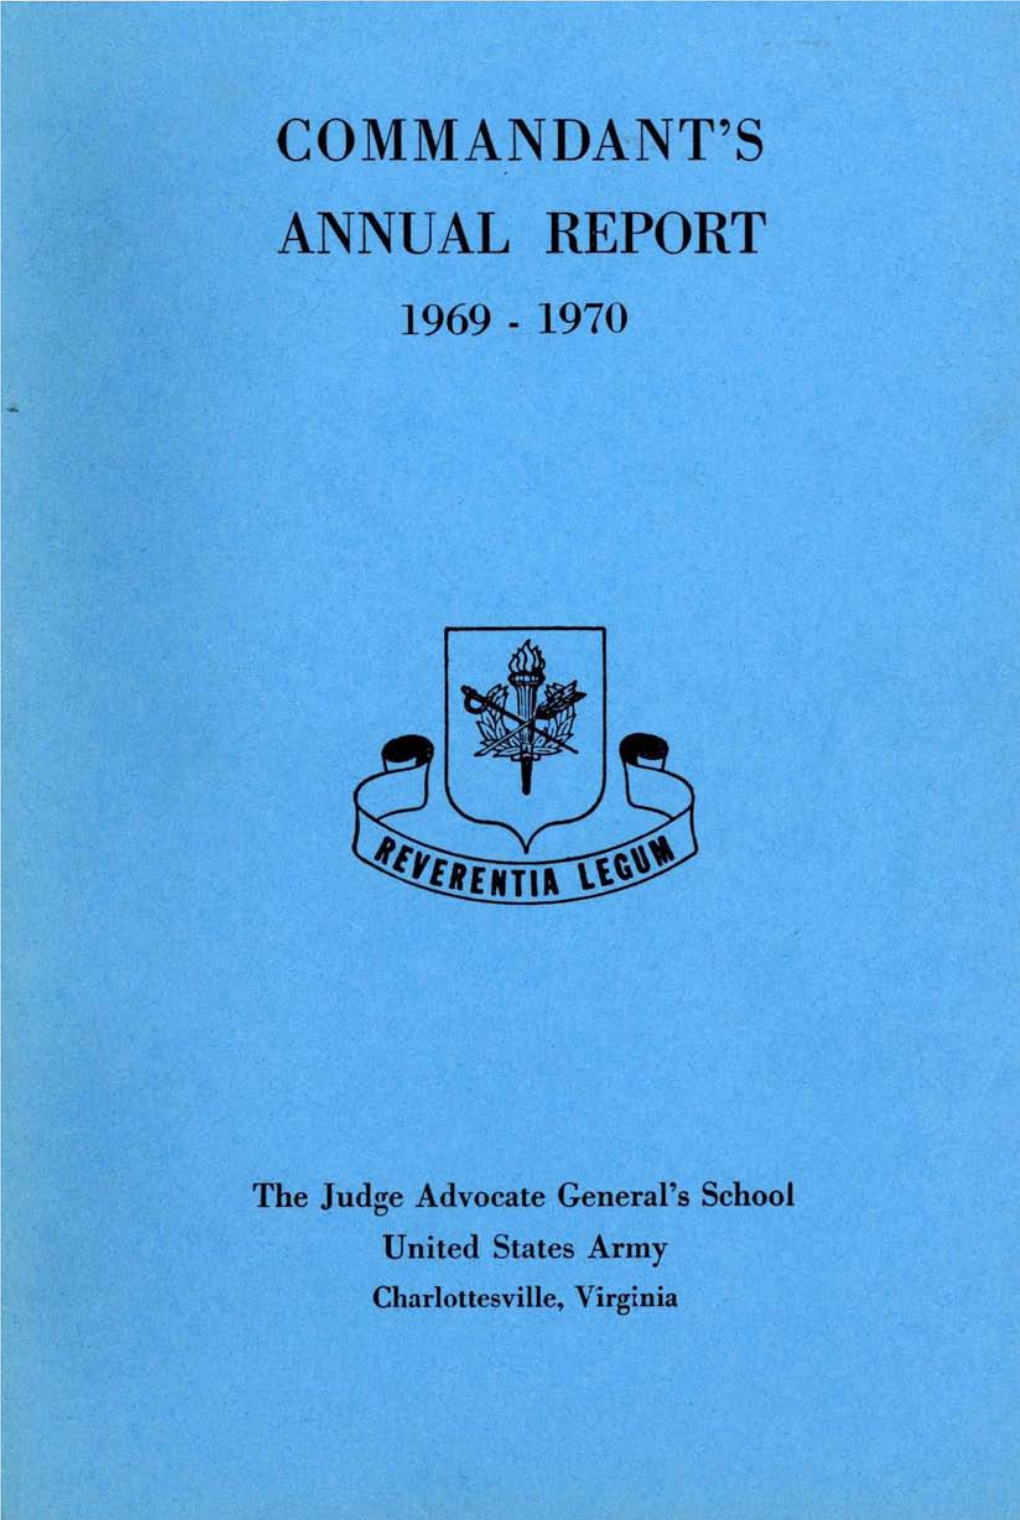 Commandant's Annual Report, 1969-1970